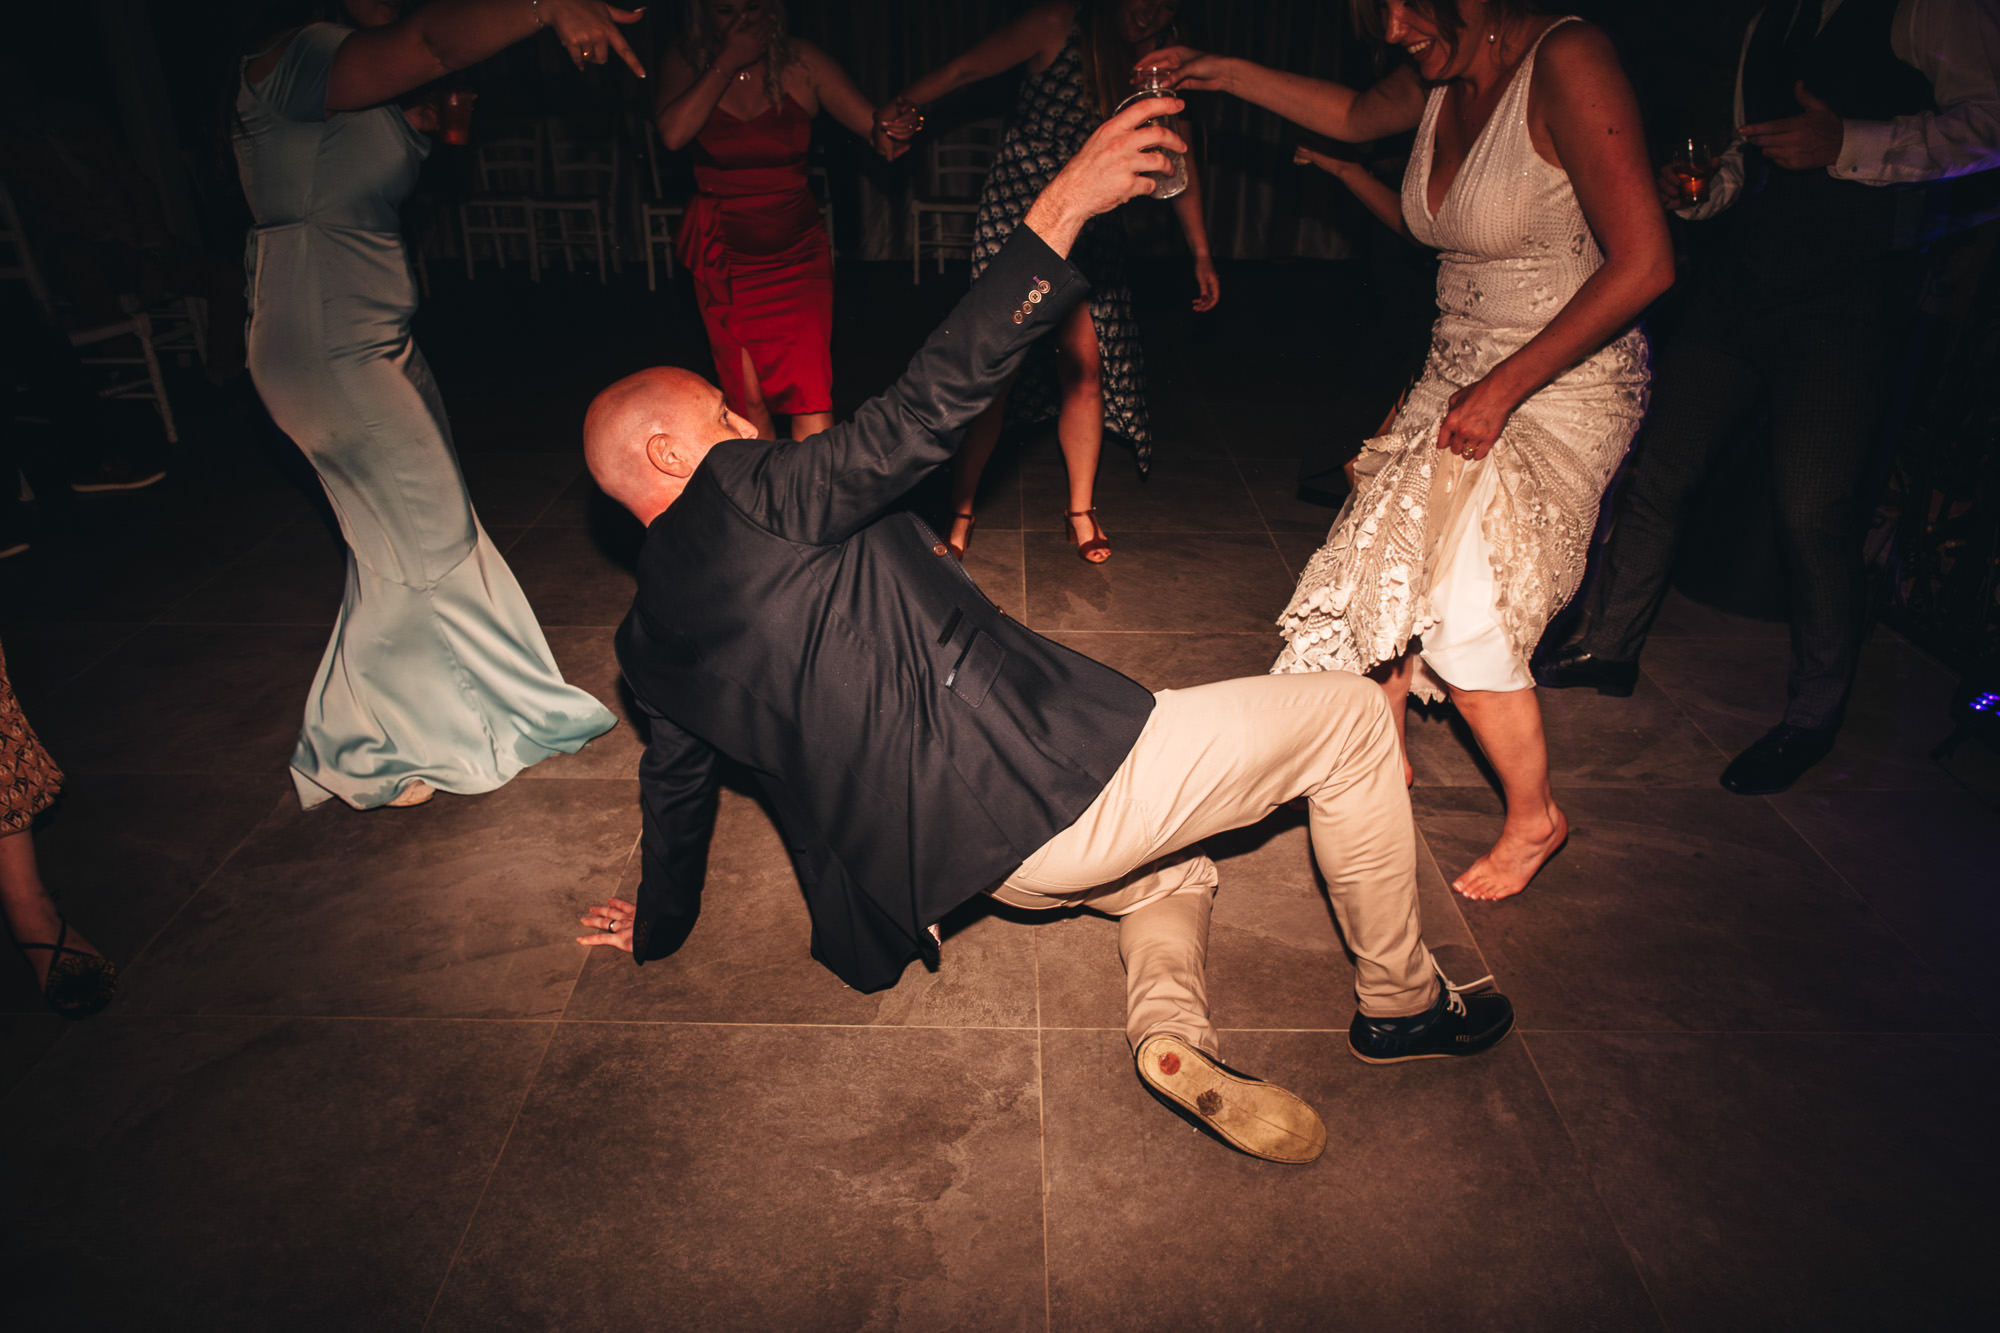 guests break dances on floor with bride